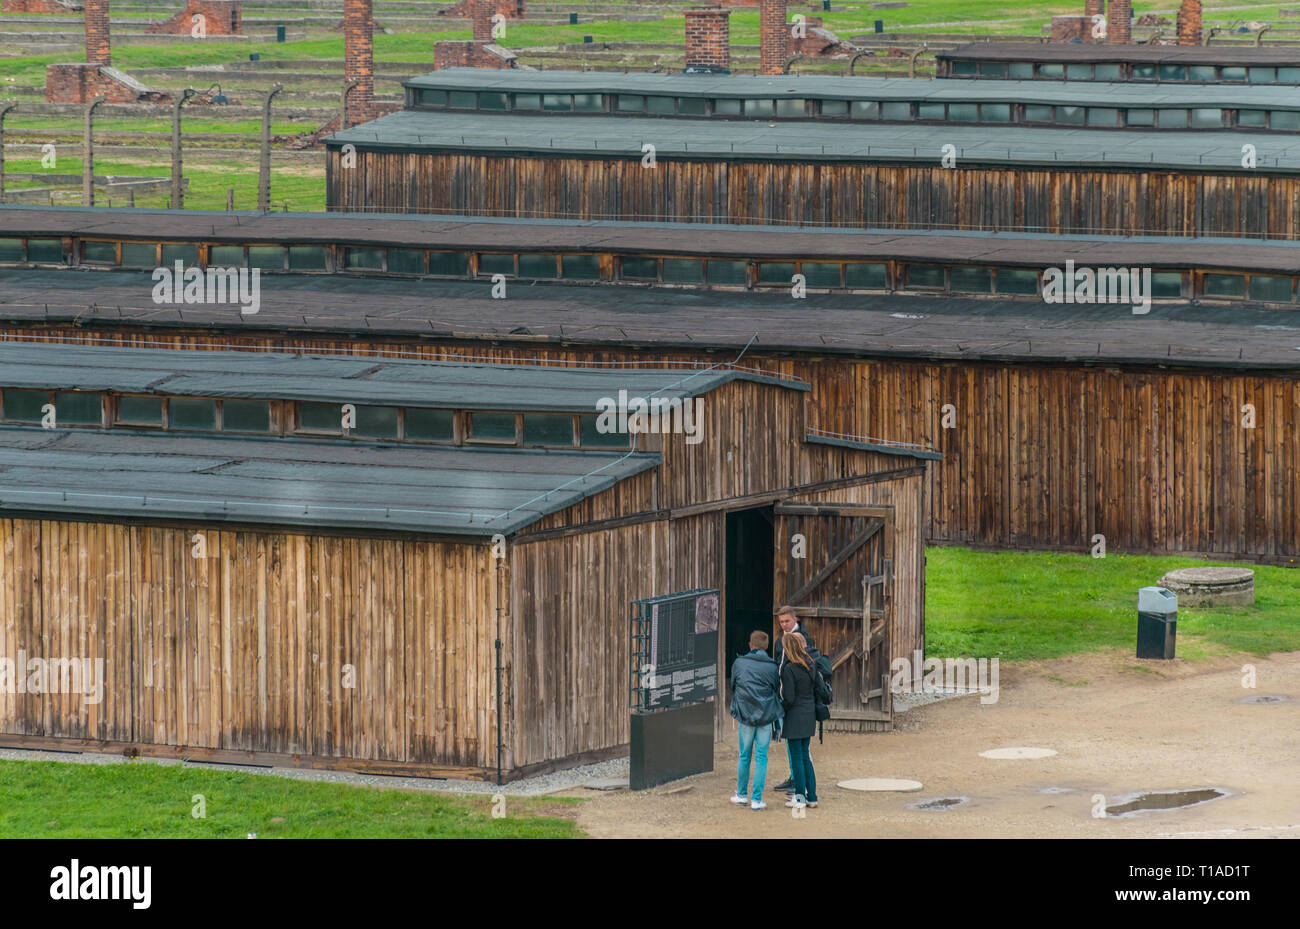 Oswiencim, Pologne - 21 septembre 2019 : le camp de concentration de Birkenau. Caserne de la mort. Camp d'extermination des juifs l'histoire. Banque D'Images